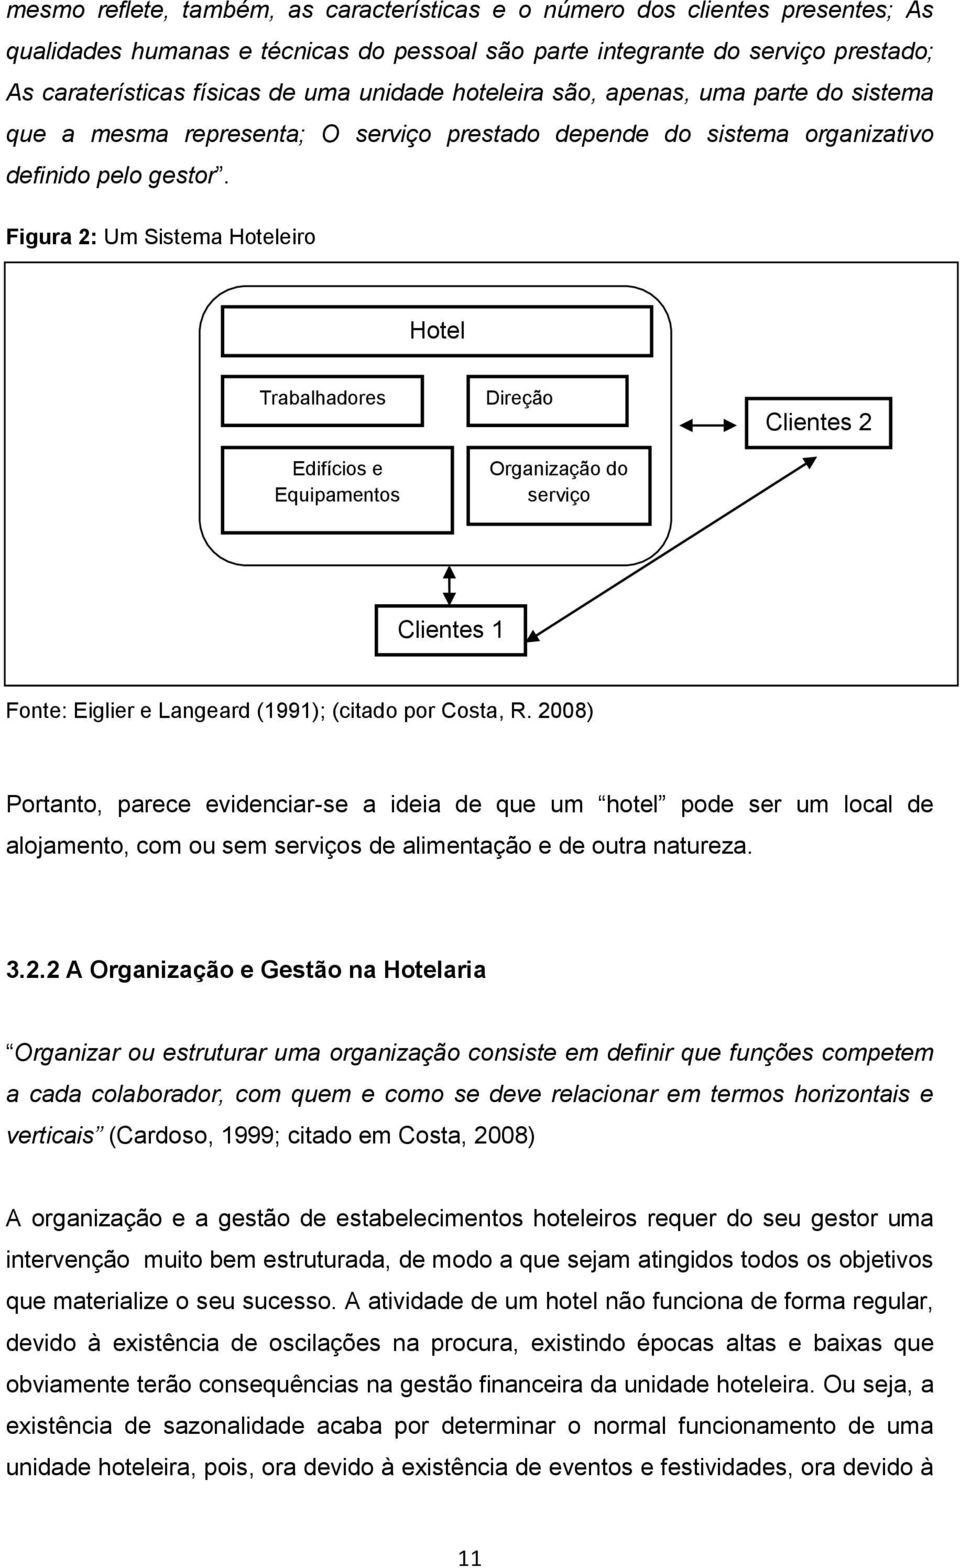 Figura 2: Um Sistema Hoteleiro Hotel Trabalhadores Edifícios e Equipamentos Direção Organização do serviço Clientes 2 Clientes 1 Fonte: Eiglier e Langeard (1991); (citado por Costa, R.